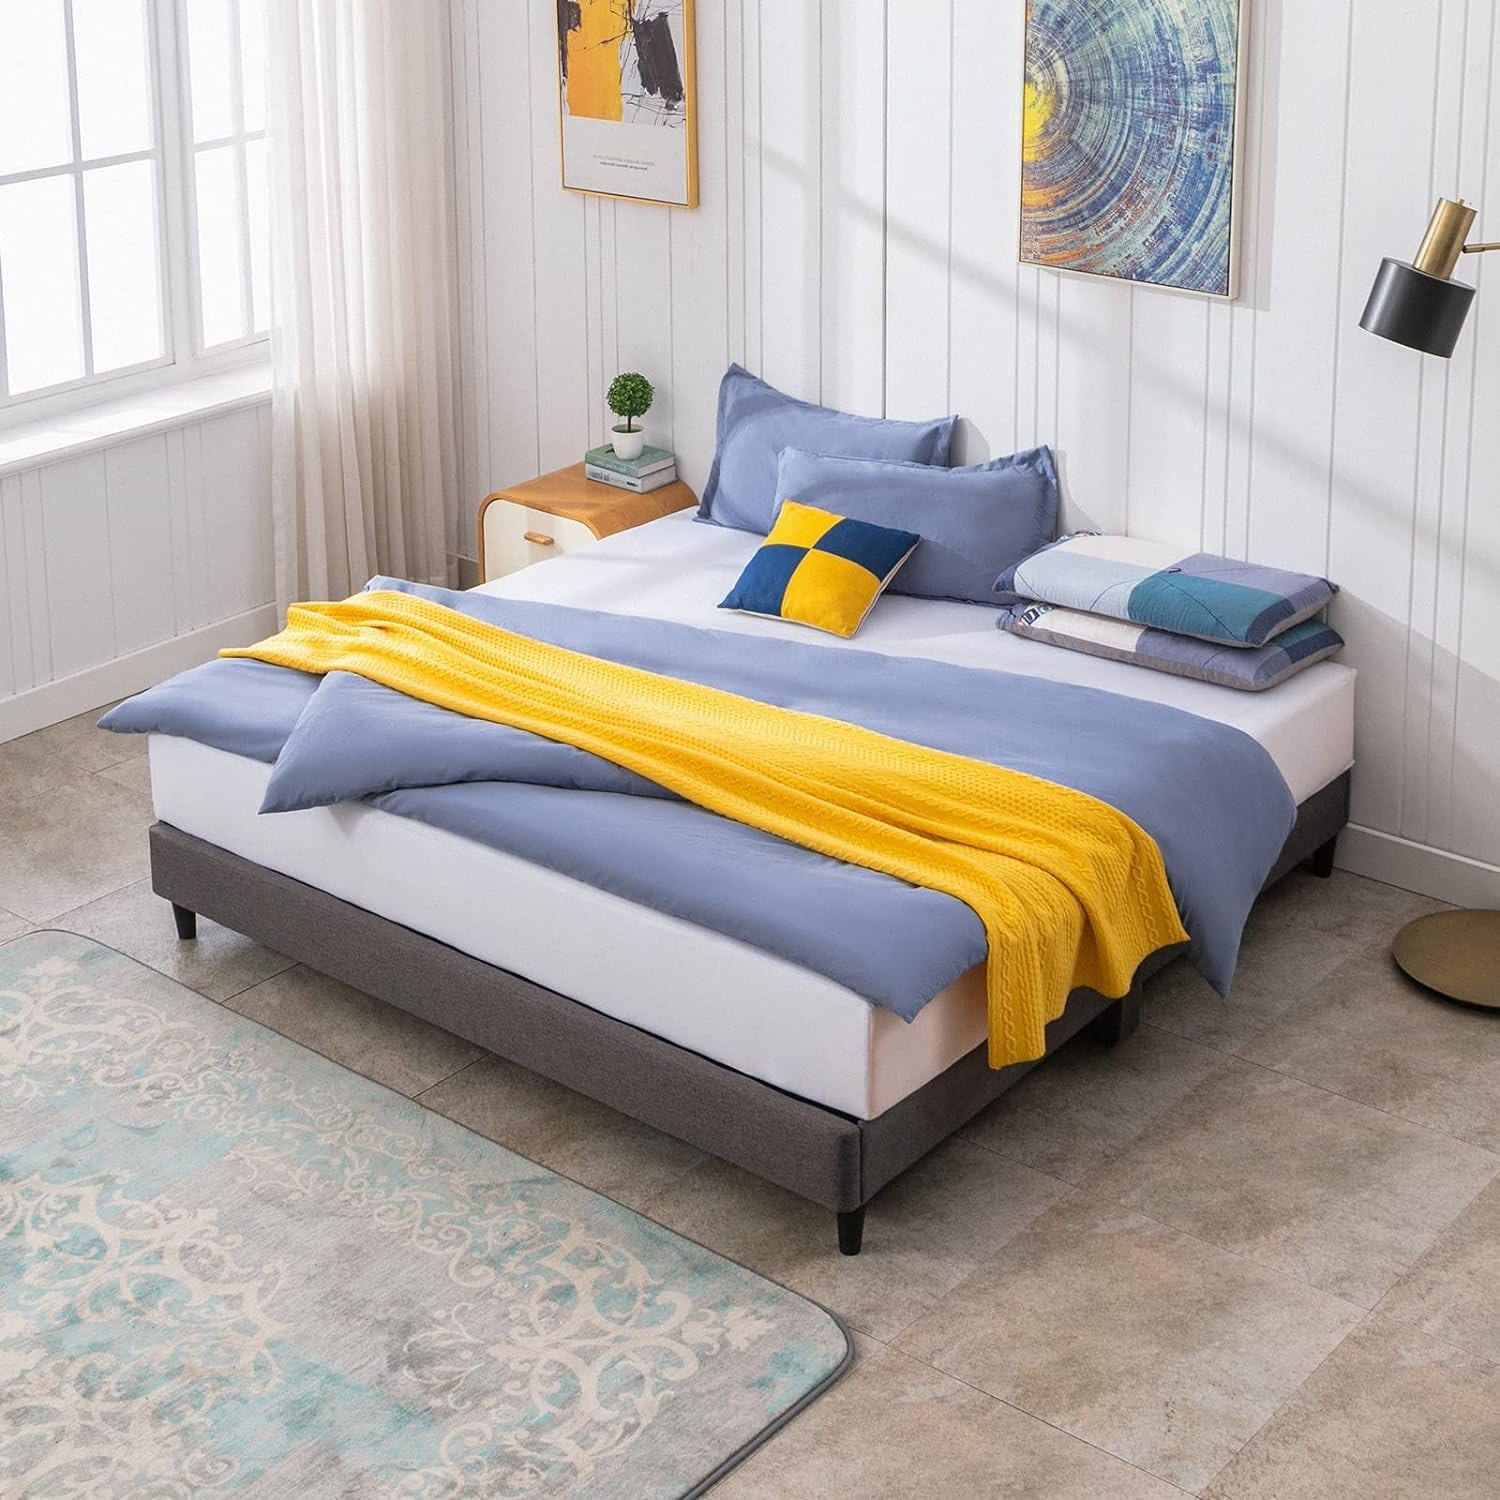 Mixoy Wooden Bed Frame linen Platform Bed Frame With Wood Slat Support